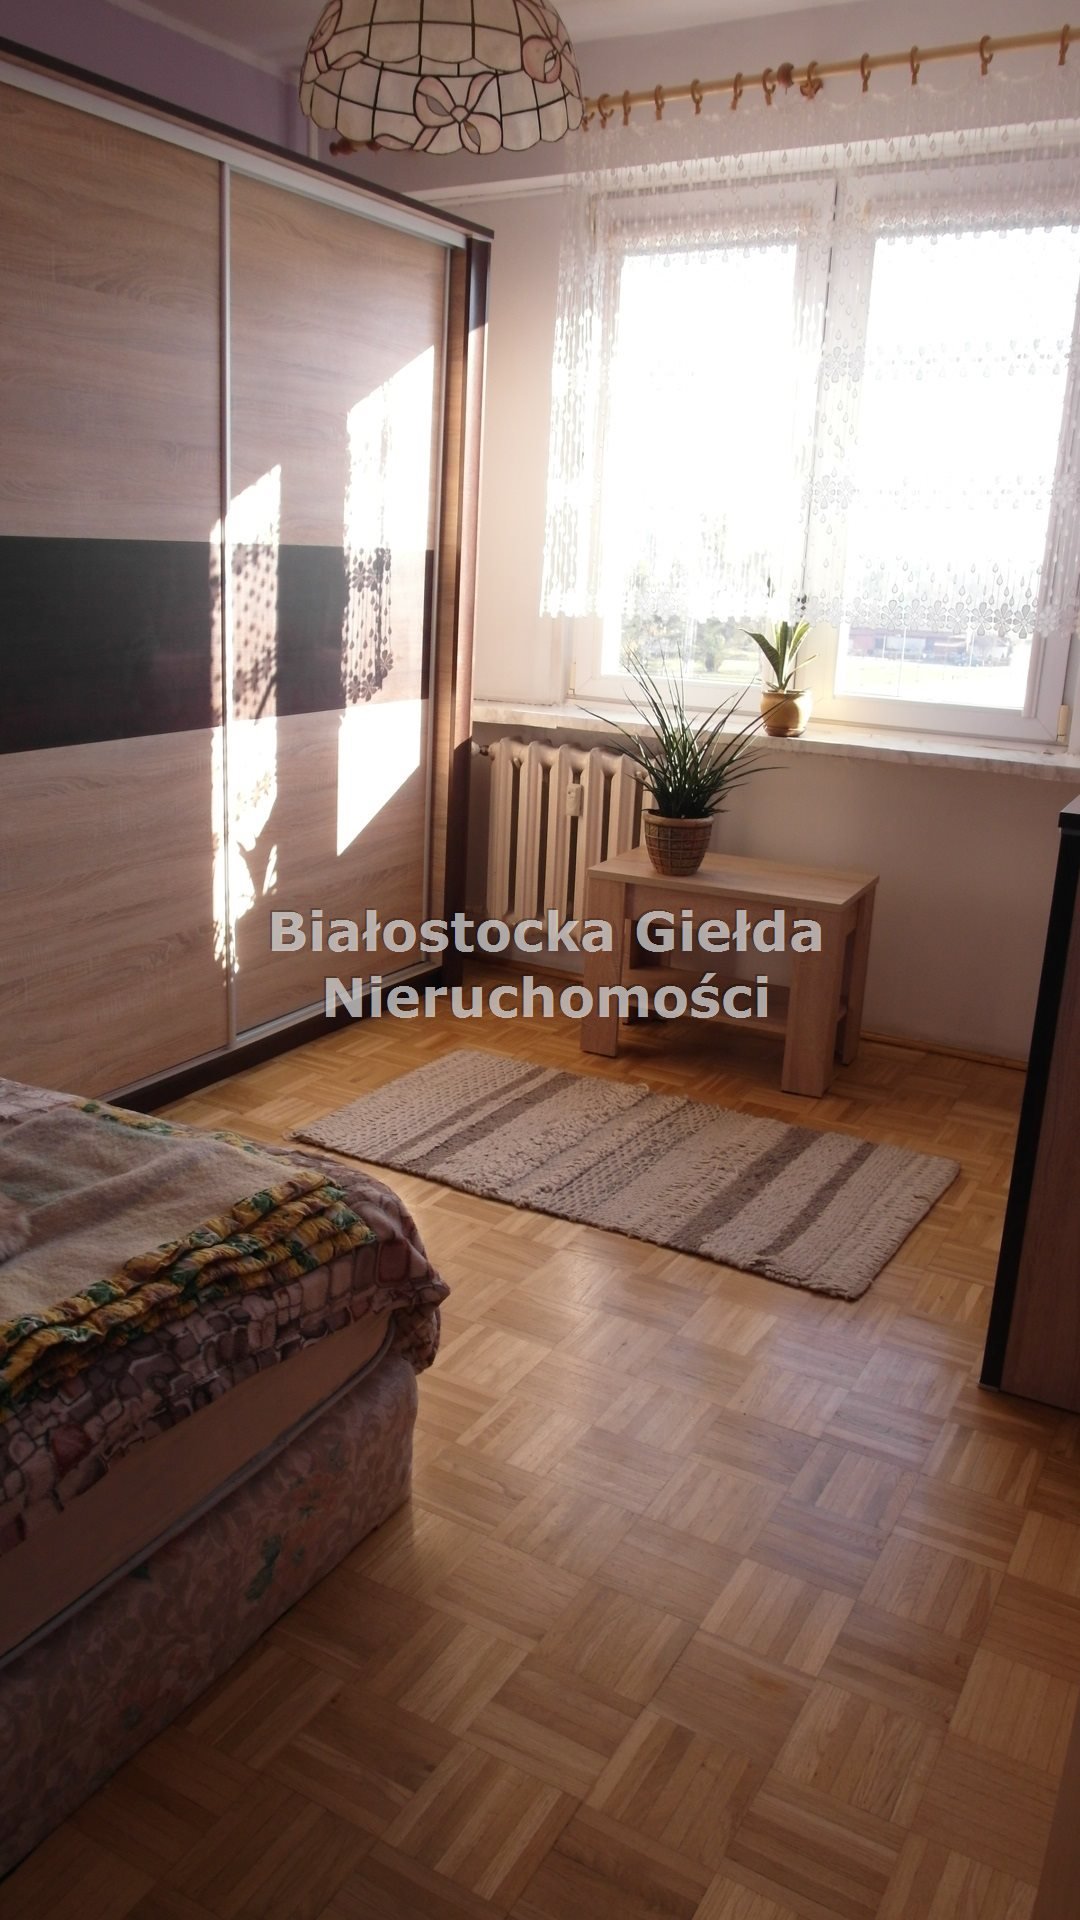 Mieszkanie trzypokojowe na wynajem Białystok, Zielone Wzgórza  61m2 Foto 3